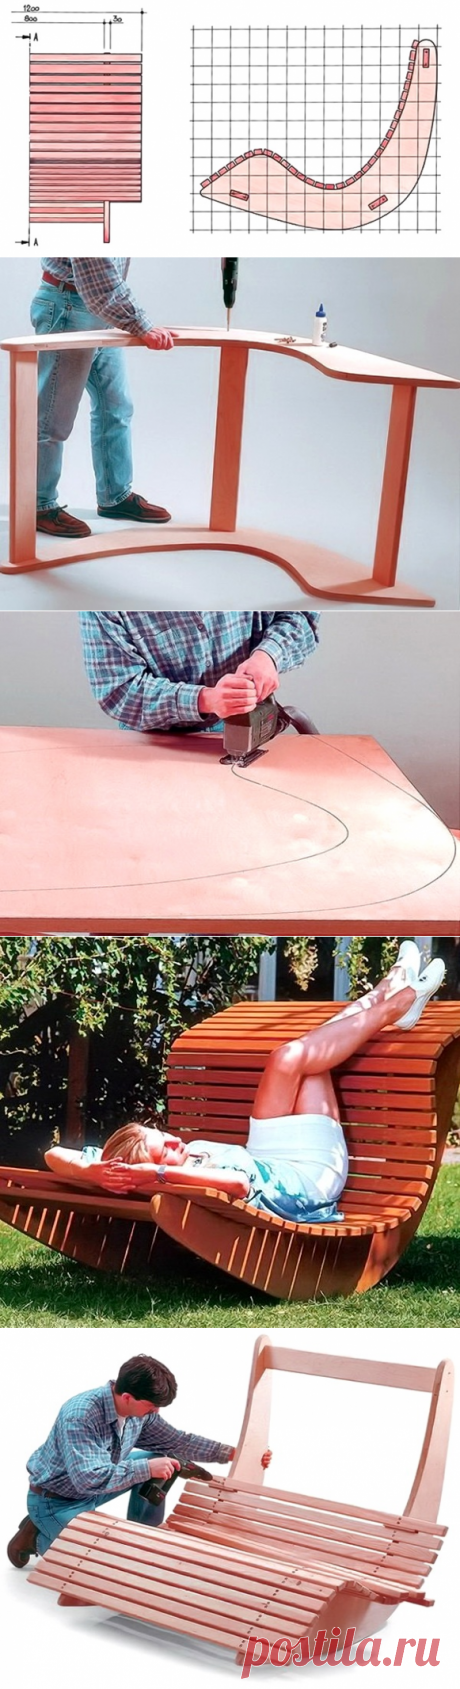 Садовое кресло-качалка своими руками — Сделай сам, идеи для творчества - DIY Ideas